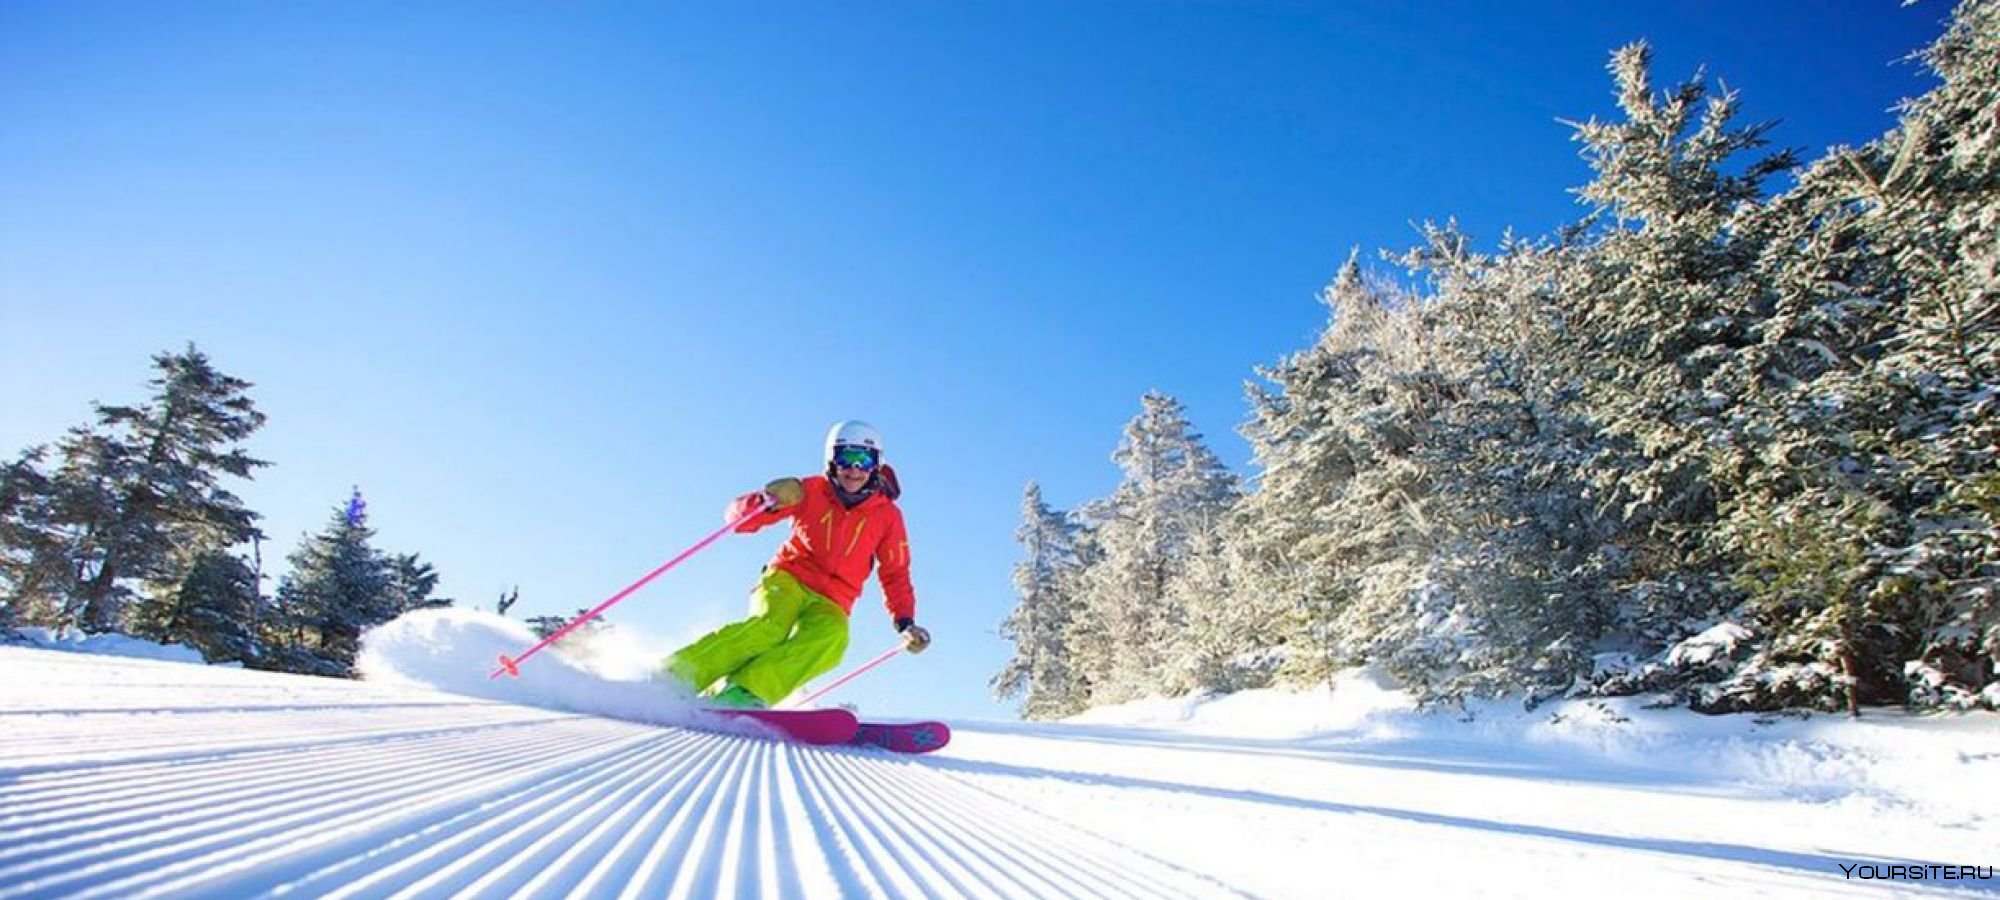 Great skiing. Горные лыжи. Катание на горных лыжах. Зима лыжи. Горы для катания на лыжах.